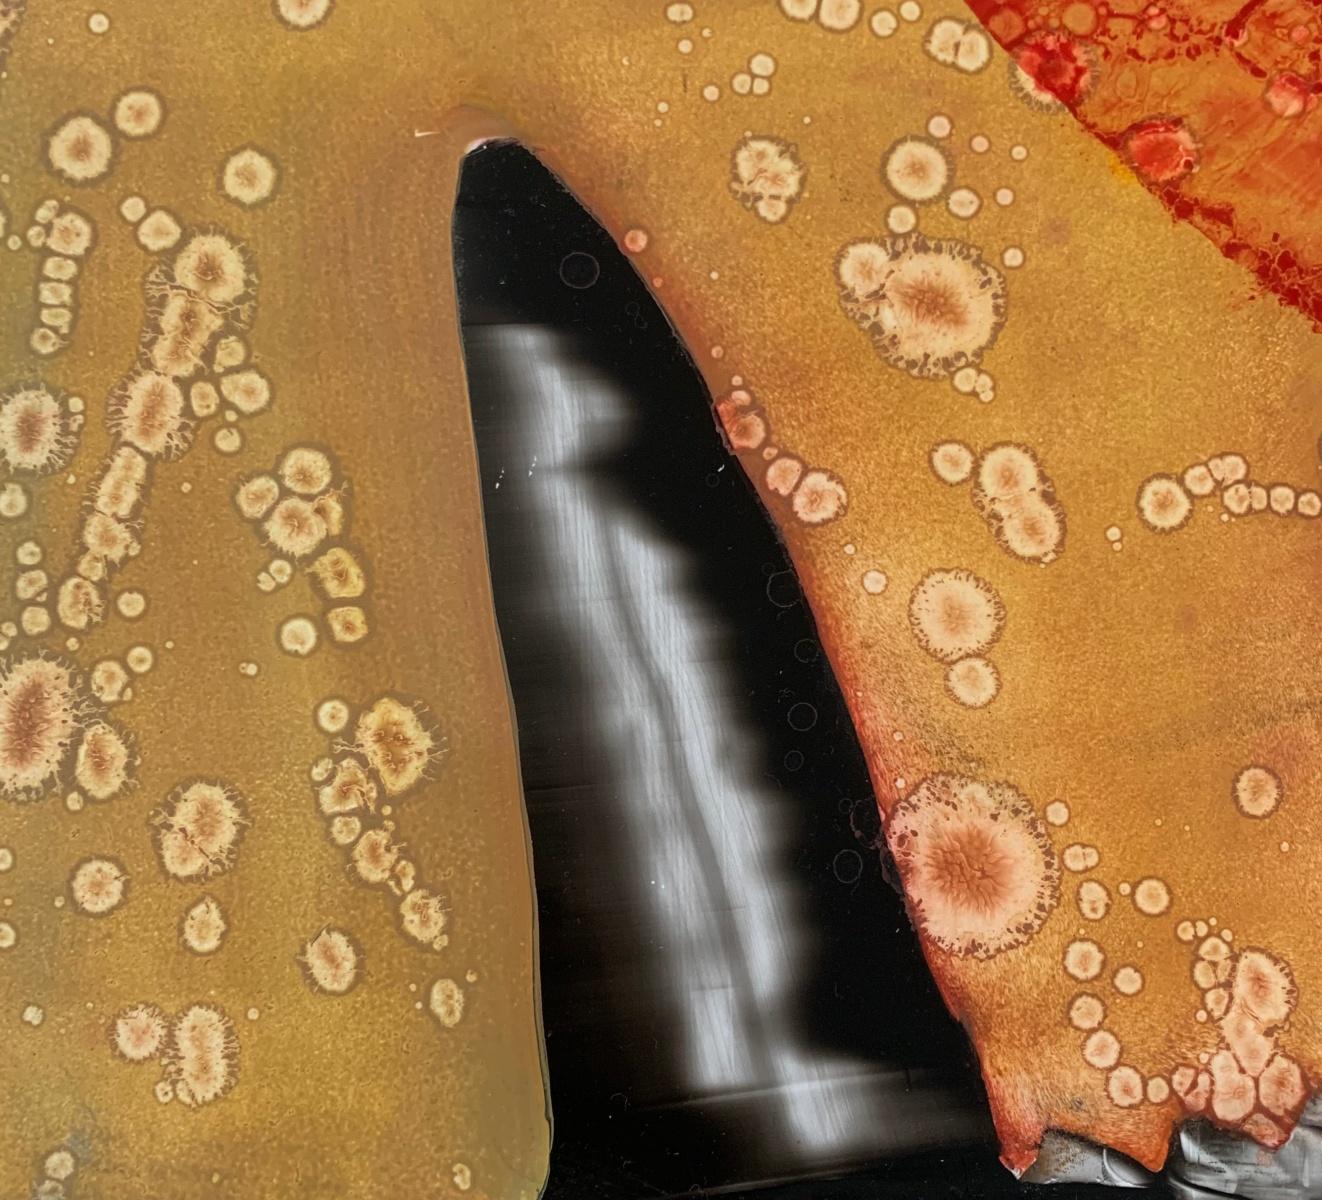 Abstraktes Gemälde von Monika Rossa, einer in den USA lebenden polnischen Künstlerin, in Acryl auf hochfestem Styrolkarton. Das Kunstwerk ist farbenfroh. Sie kann sowohl vertikal als auch horizontal ausgestellt werden.

MONIKA ROSSA 
studierte